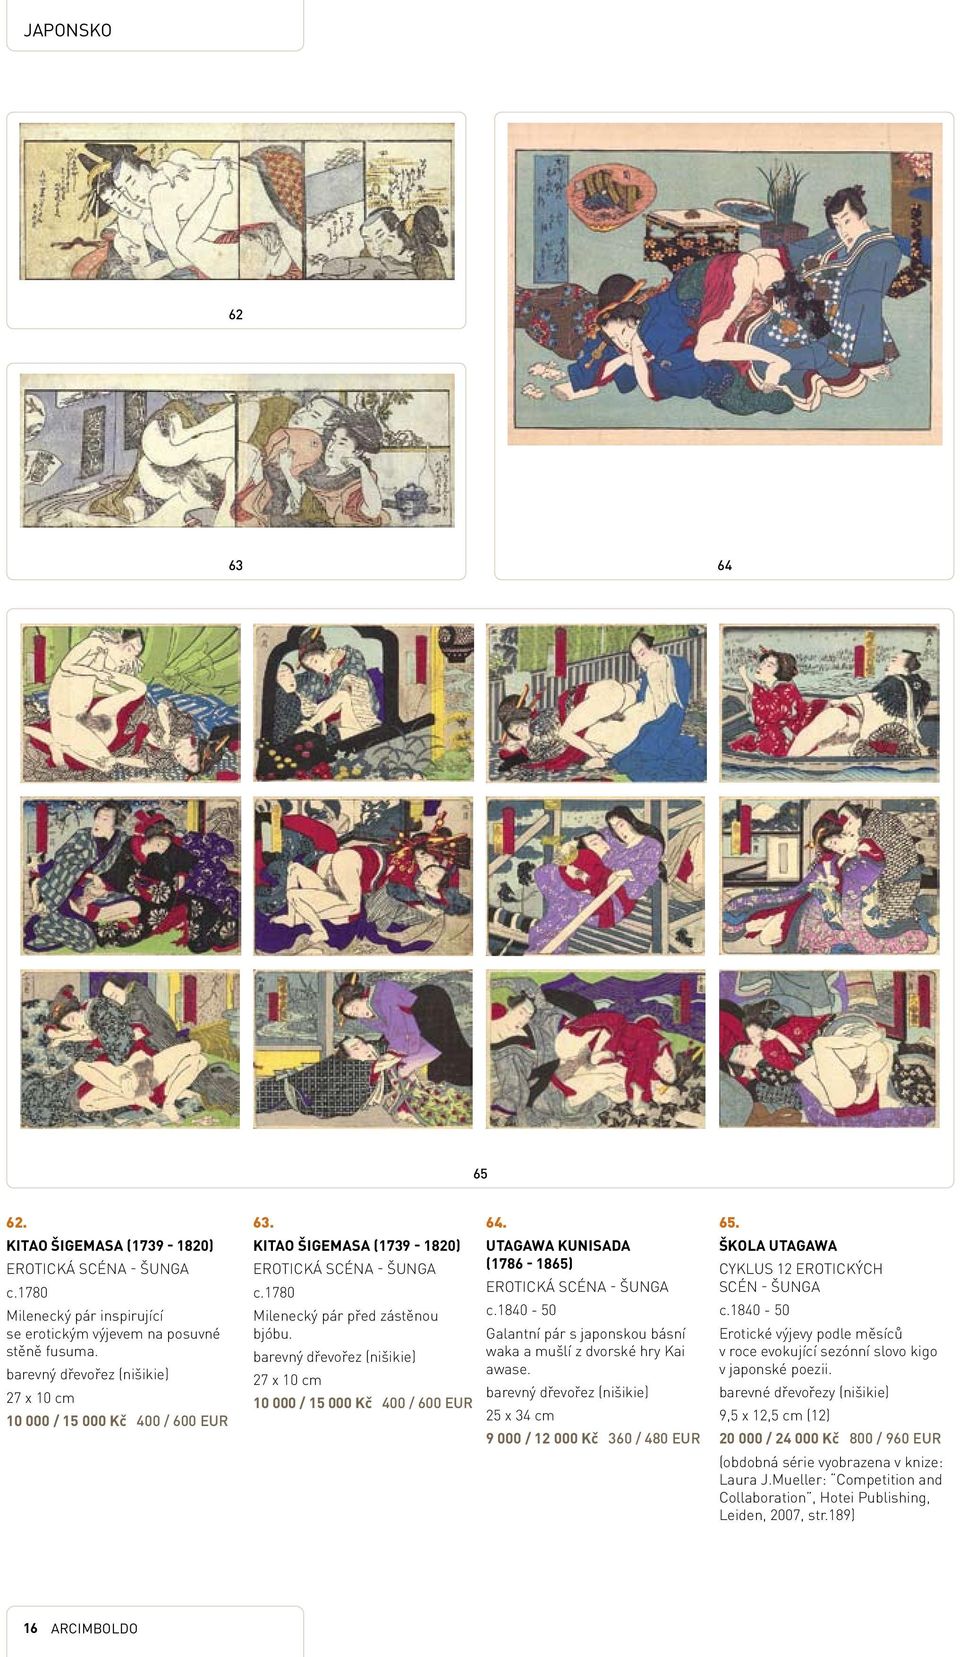 Utagawa Kunisada (1786-1865) Erotická scéna - šunga c.1840-50 Galantní pár s japonskou básní waka a mušlí z dvorské hry Kai awase. 25 x 34 cm 9 000 / 12 000 Kč 360 / 480 EUR 65.